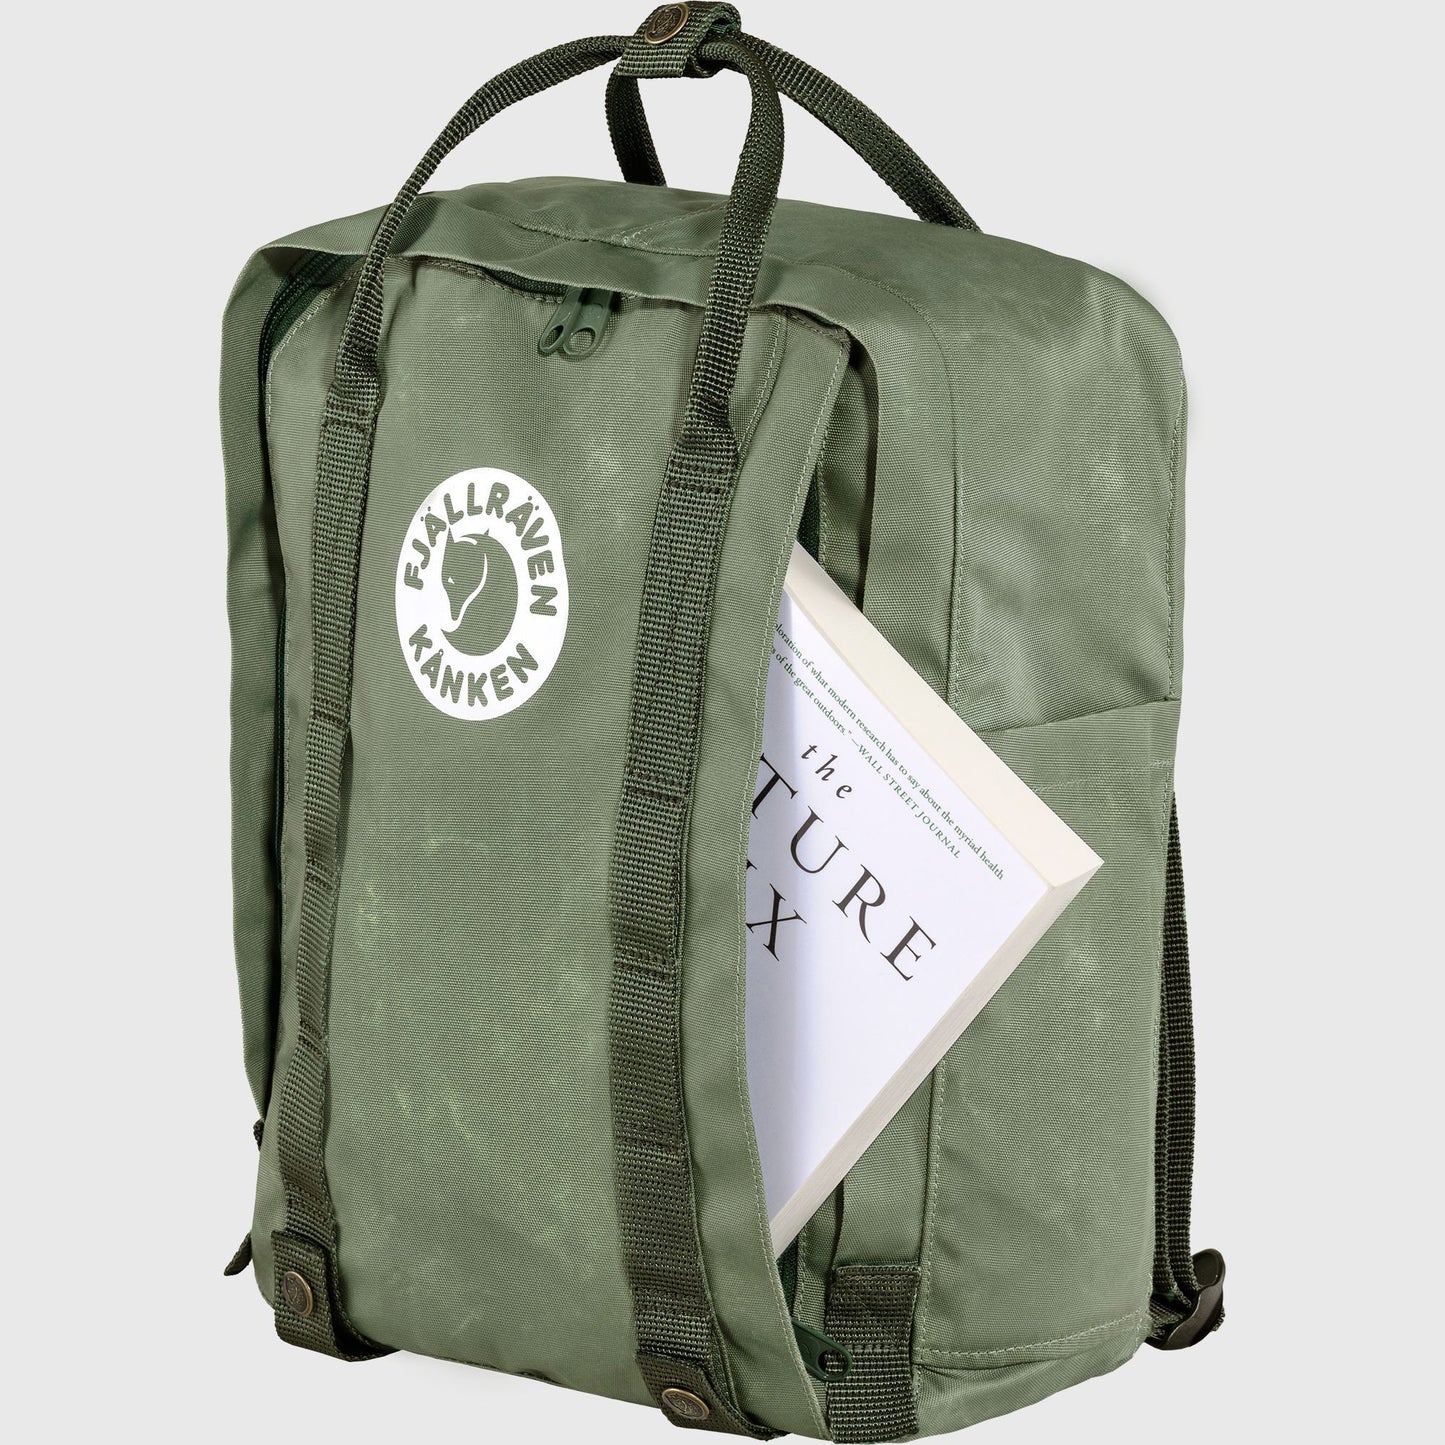 Fjallraven Tree - Kanken 狐狸袋 背囊 書包戶外背包 School bag outdoor backpack 16L - New Moon Blue 23511-551